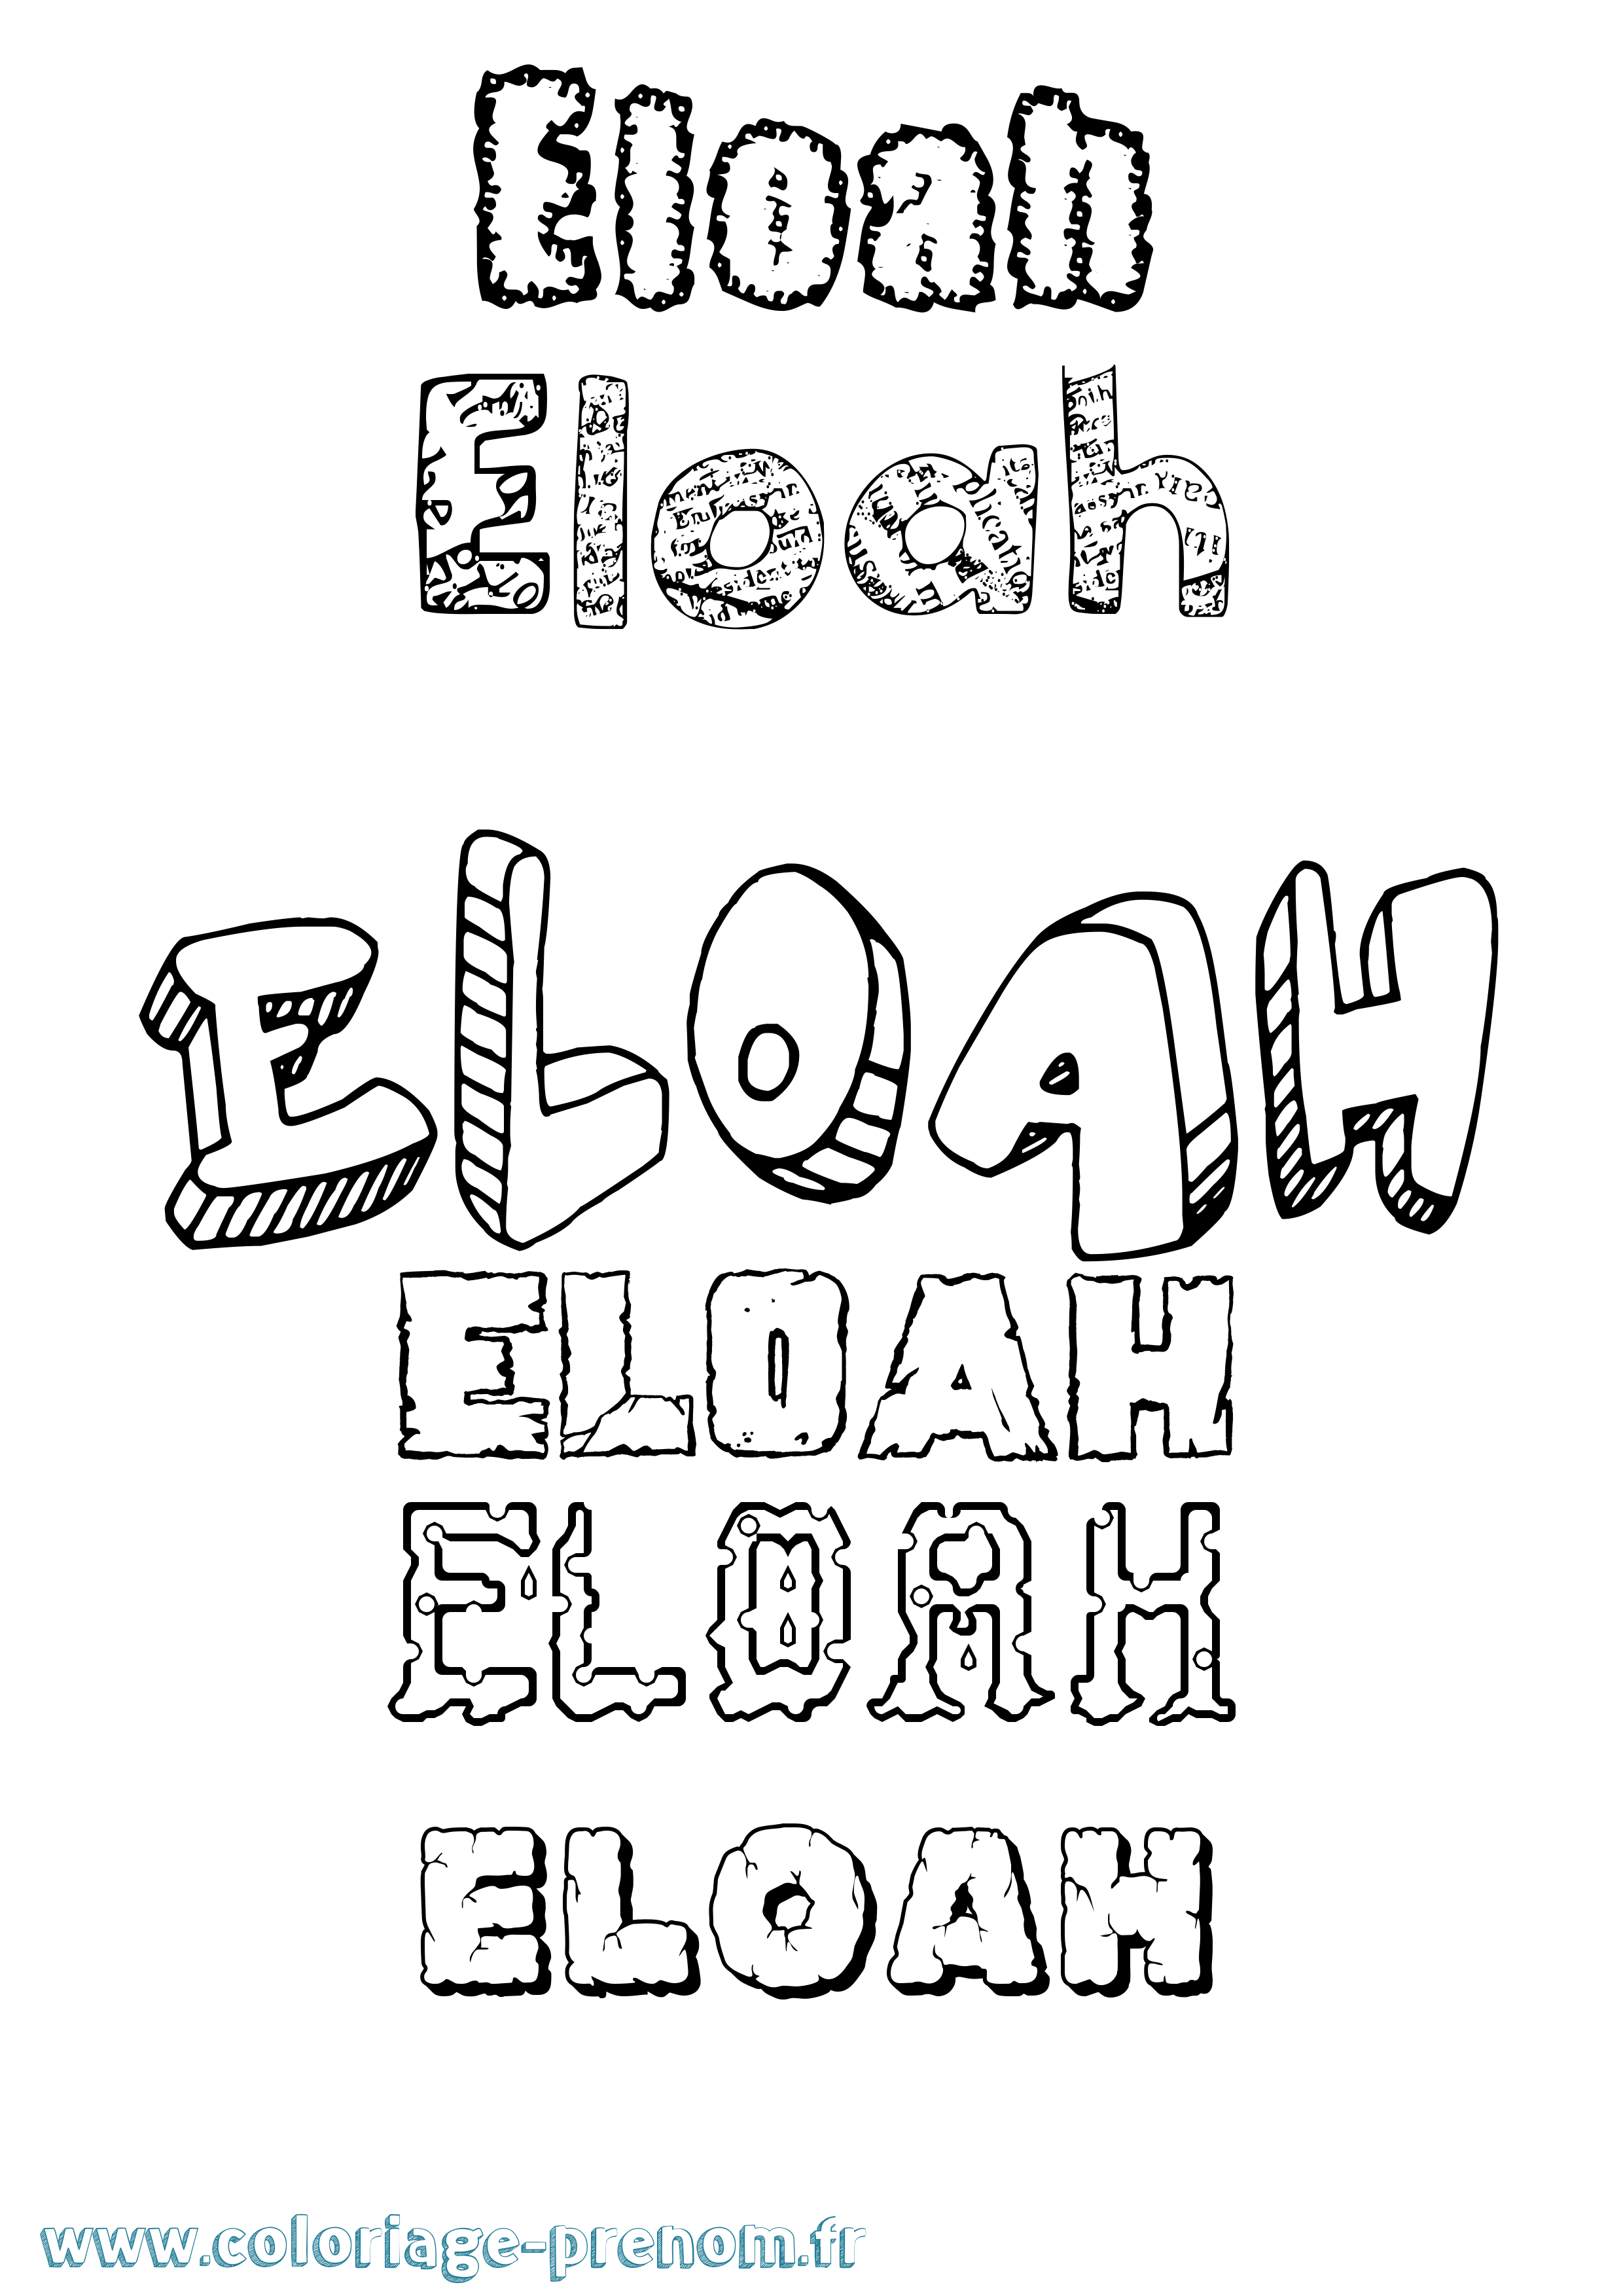 Coloriage prénom Eloah Destructuré